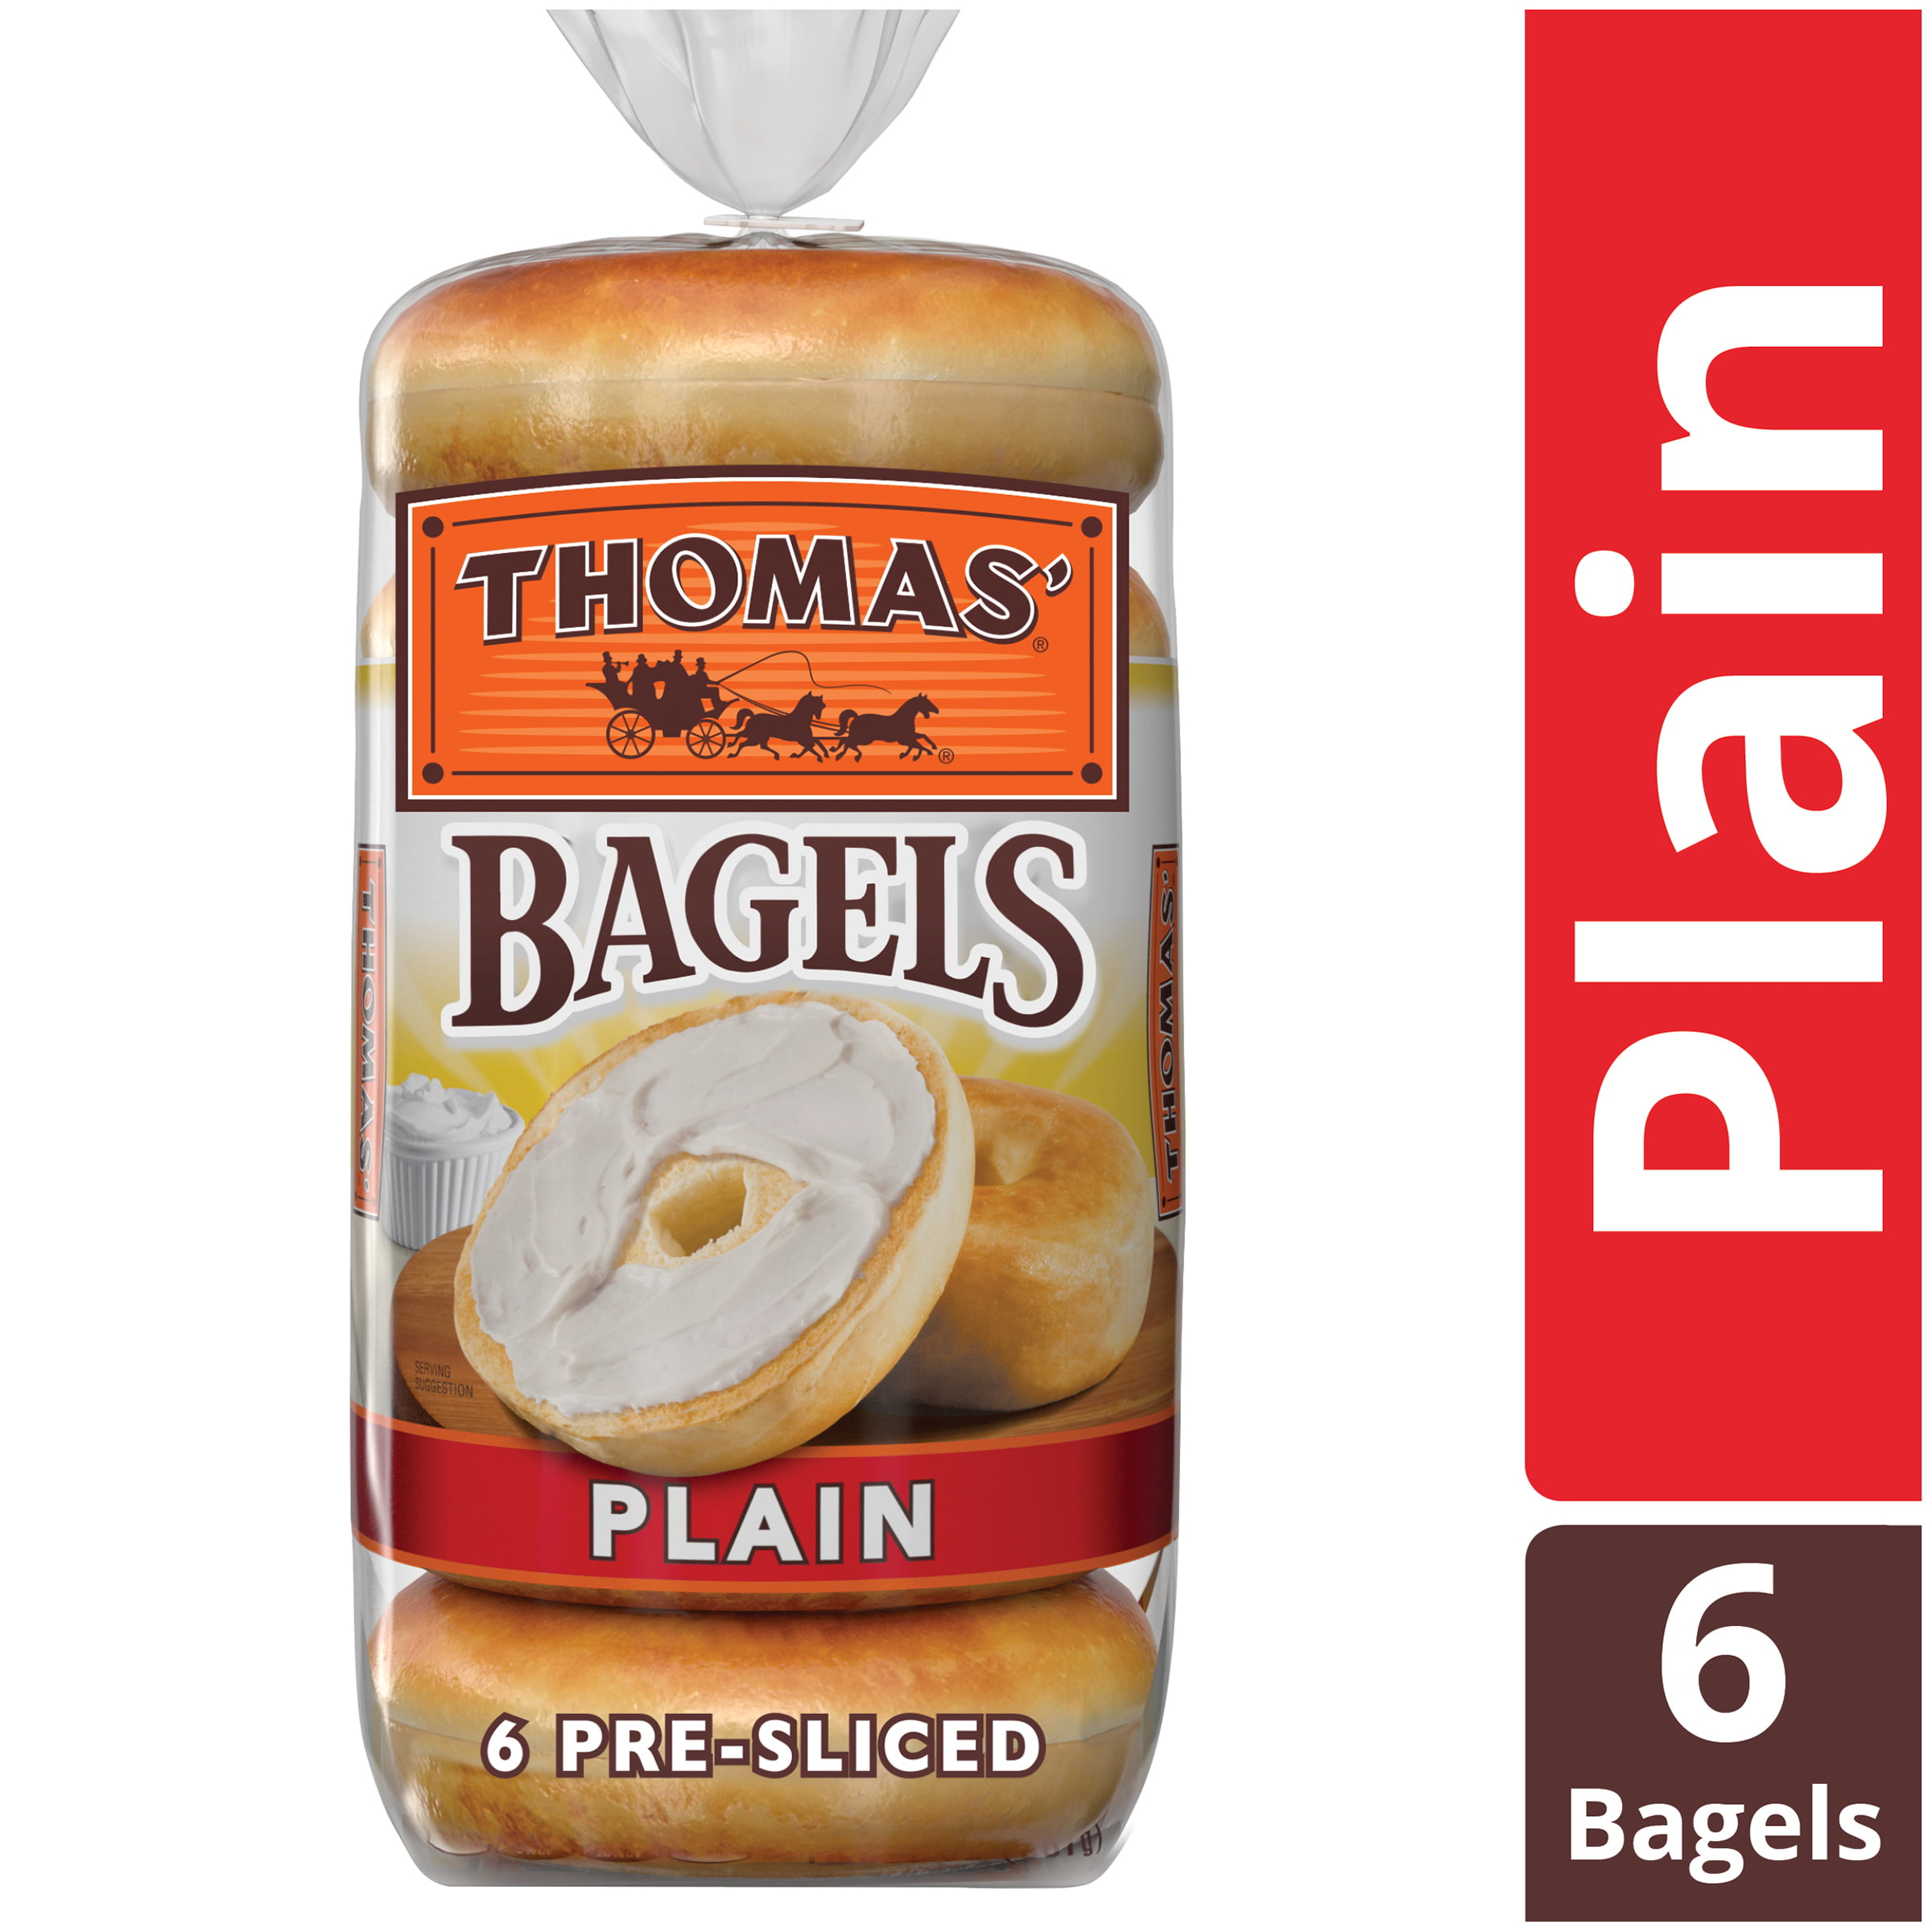 Thomas Plain Original Pre Sliced Bagels 6 Count Walmart Com Walmart Com [ 2400 x 2400 Pixel ]